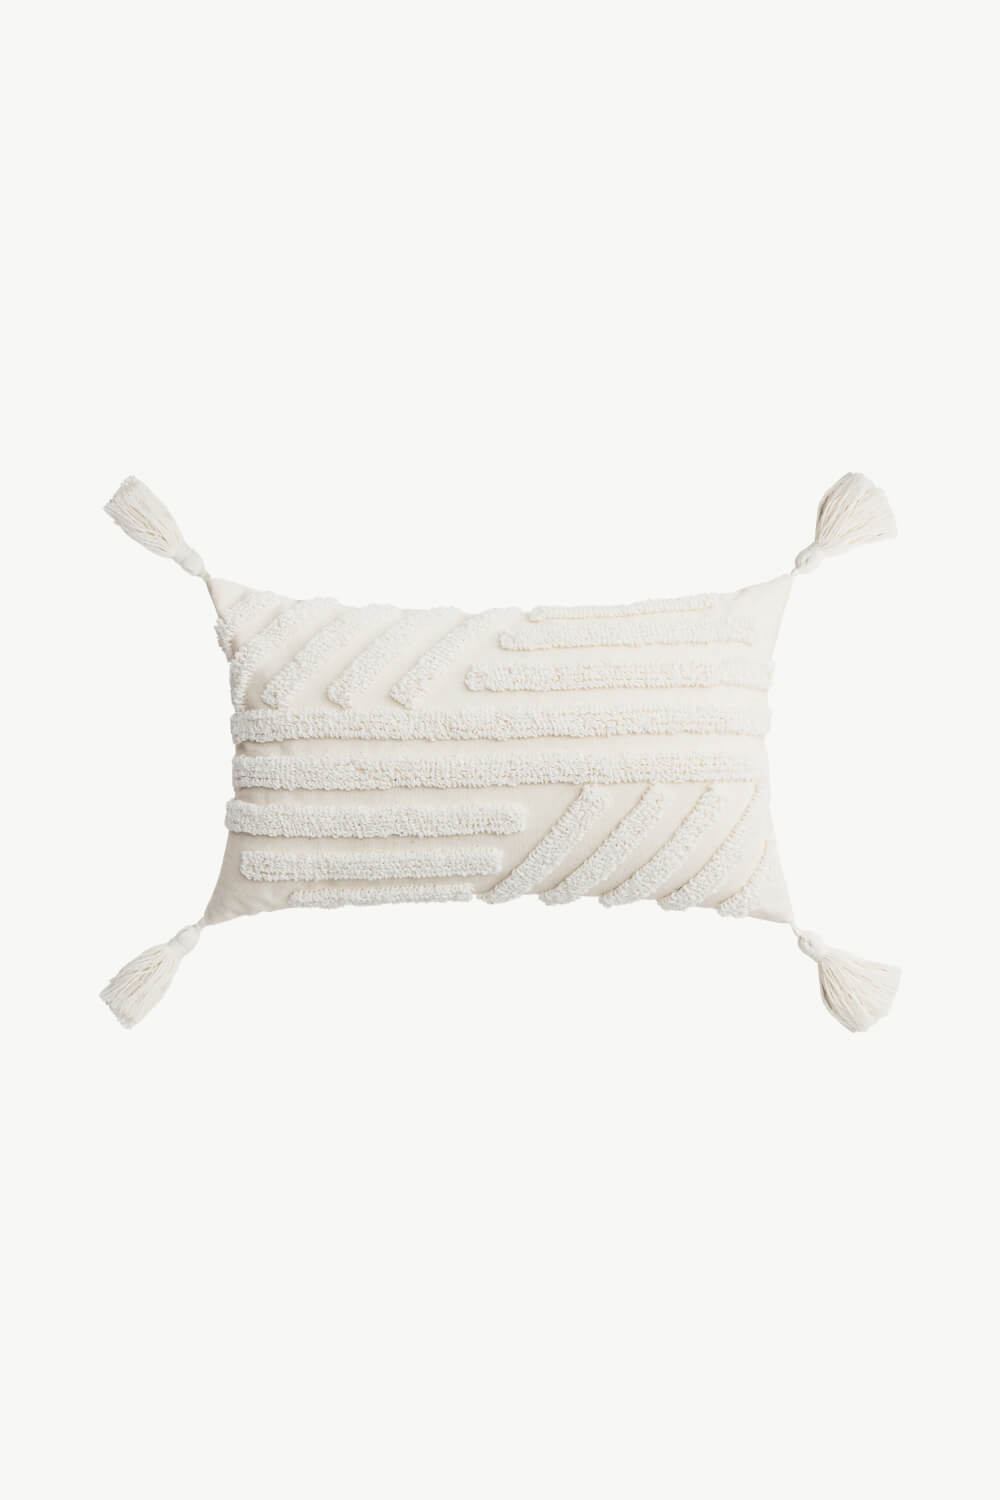 White Smoke Textured Decorative Throw Pillow Case